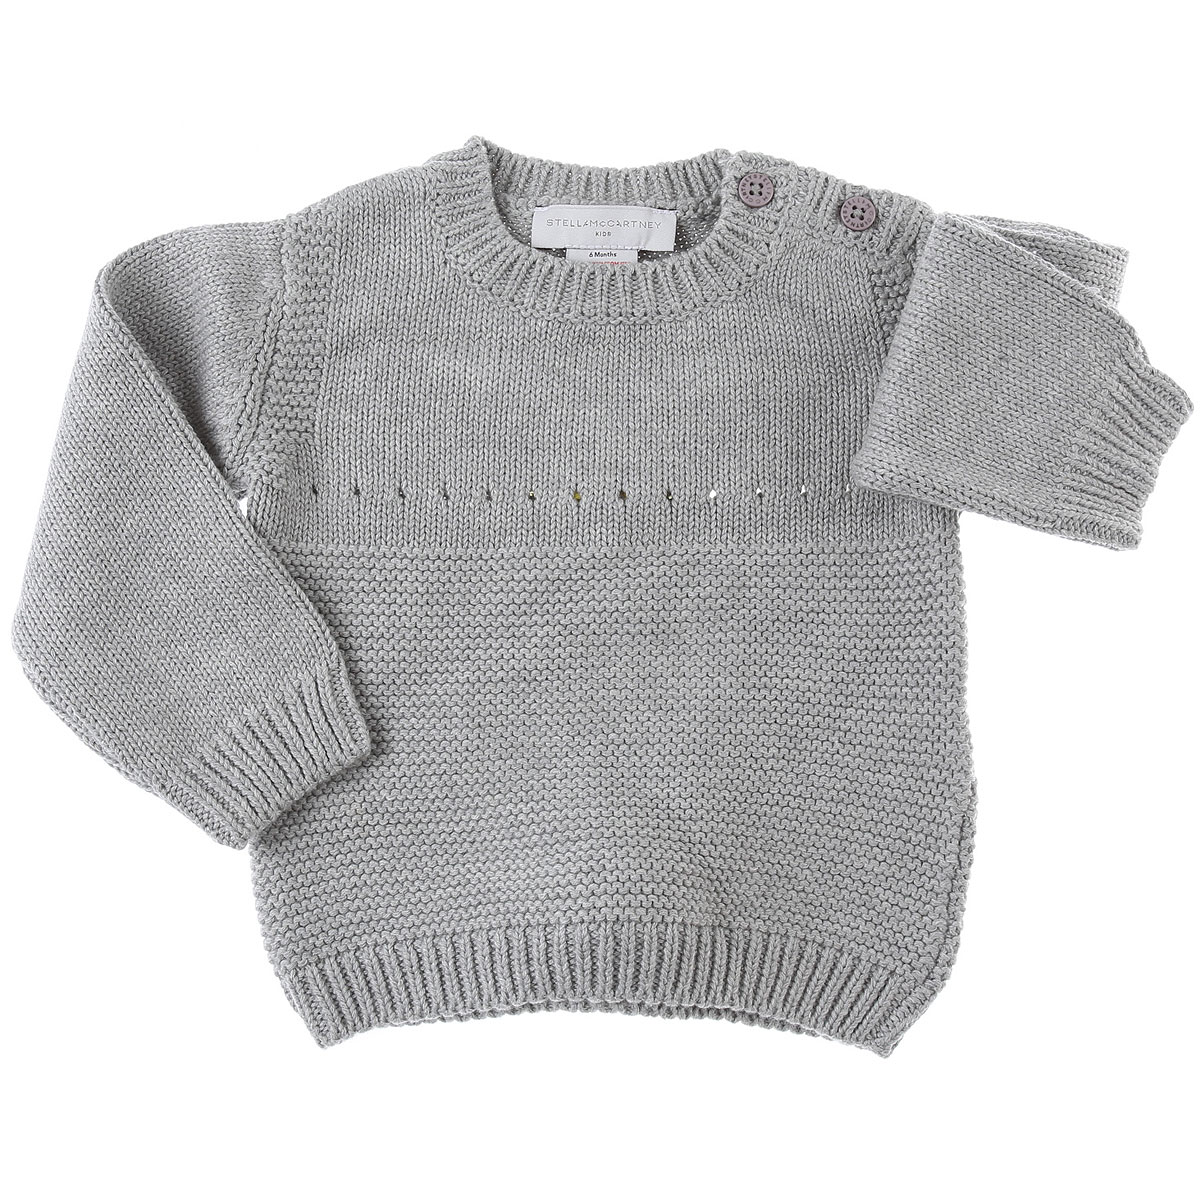 Stella McCartney Baby Pullover für Jungen Günstig im Sale, Grau, Baumwolle, 2017, 12 M 18M 3M 6M 9M